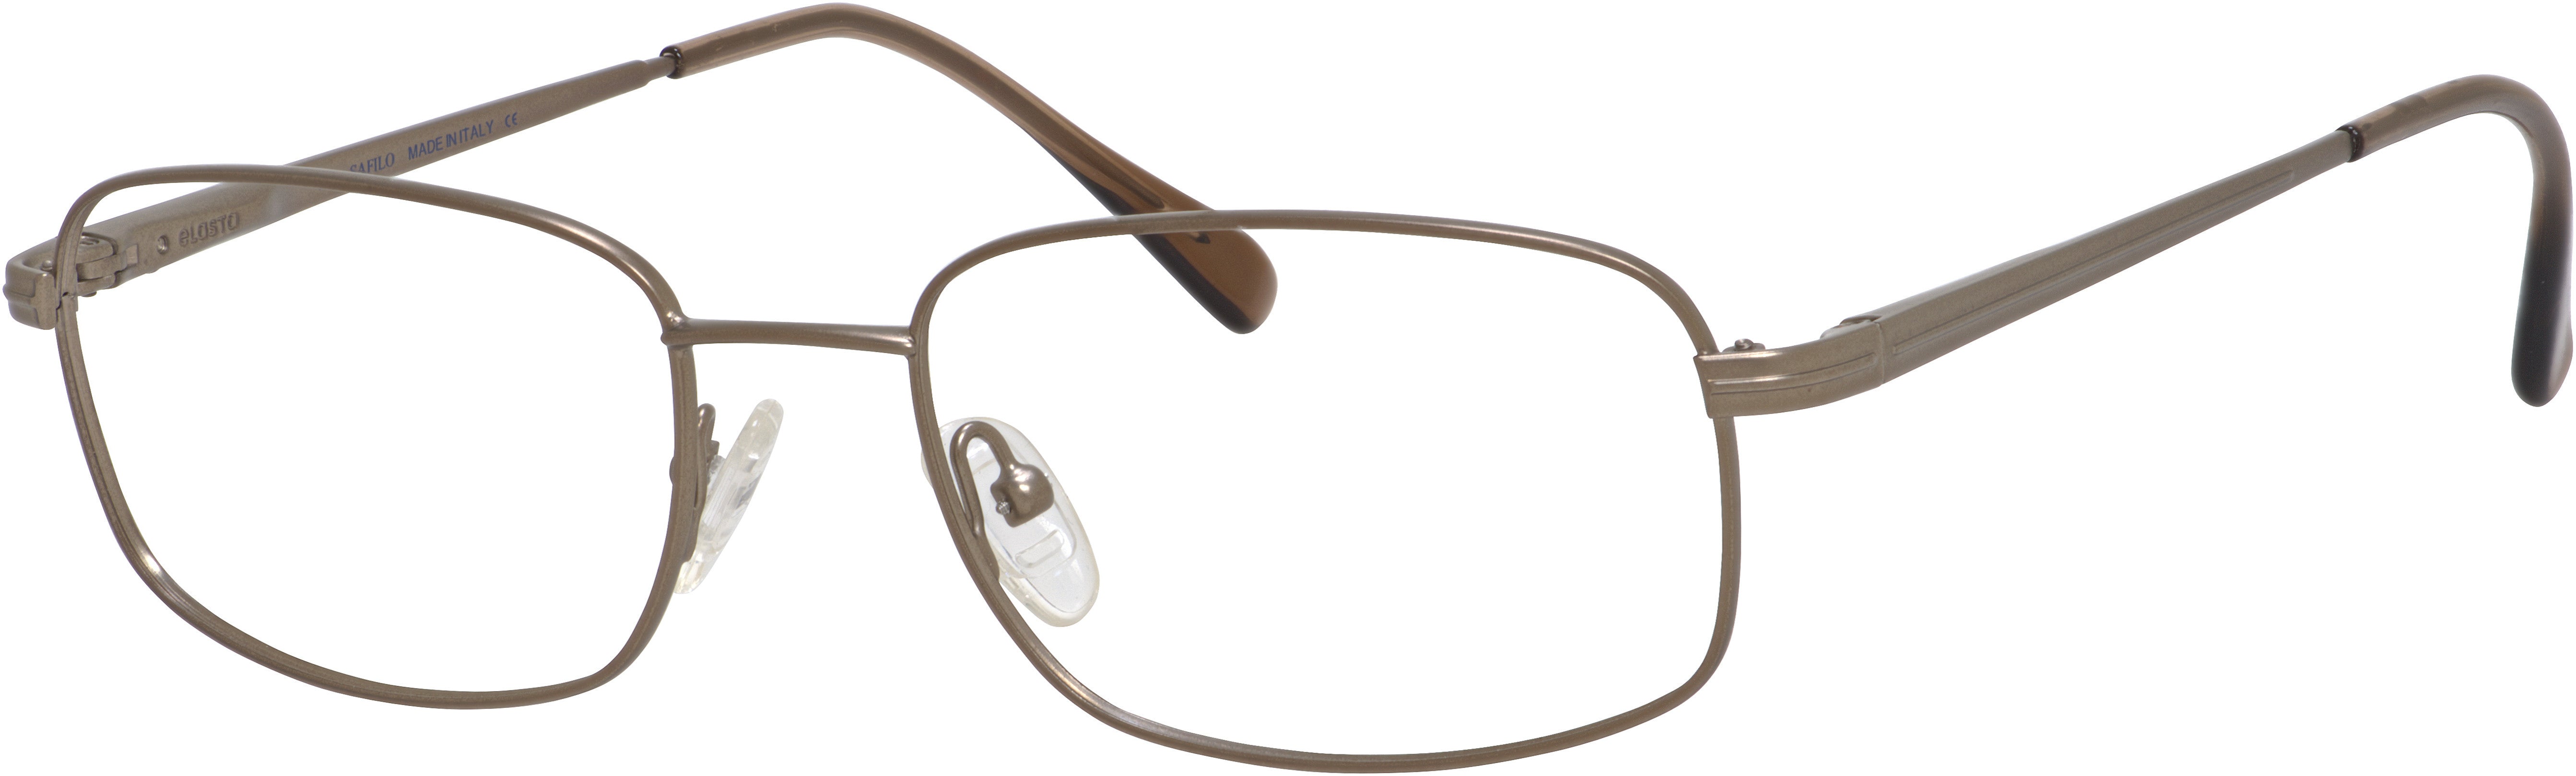  Elasta 7104 Rectangular Eyeglasses 07ZB-07ZB  Gold Ash (00 Demo Lens)